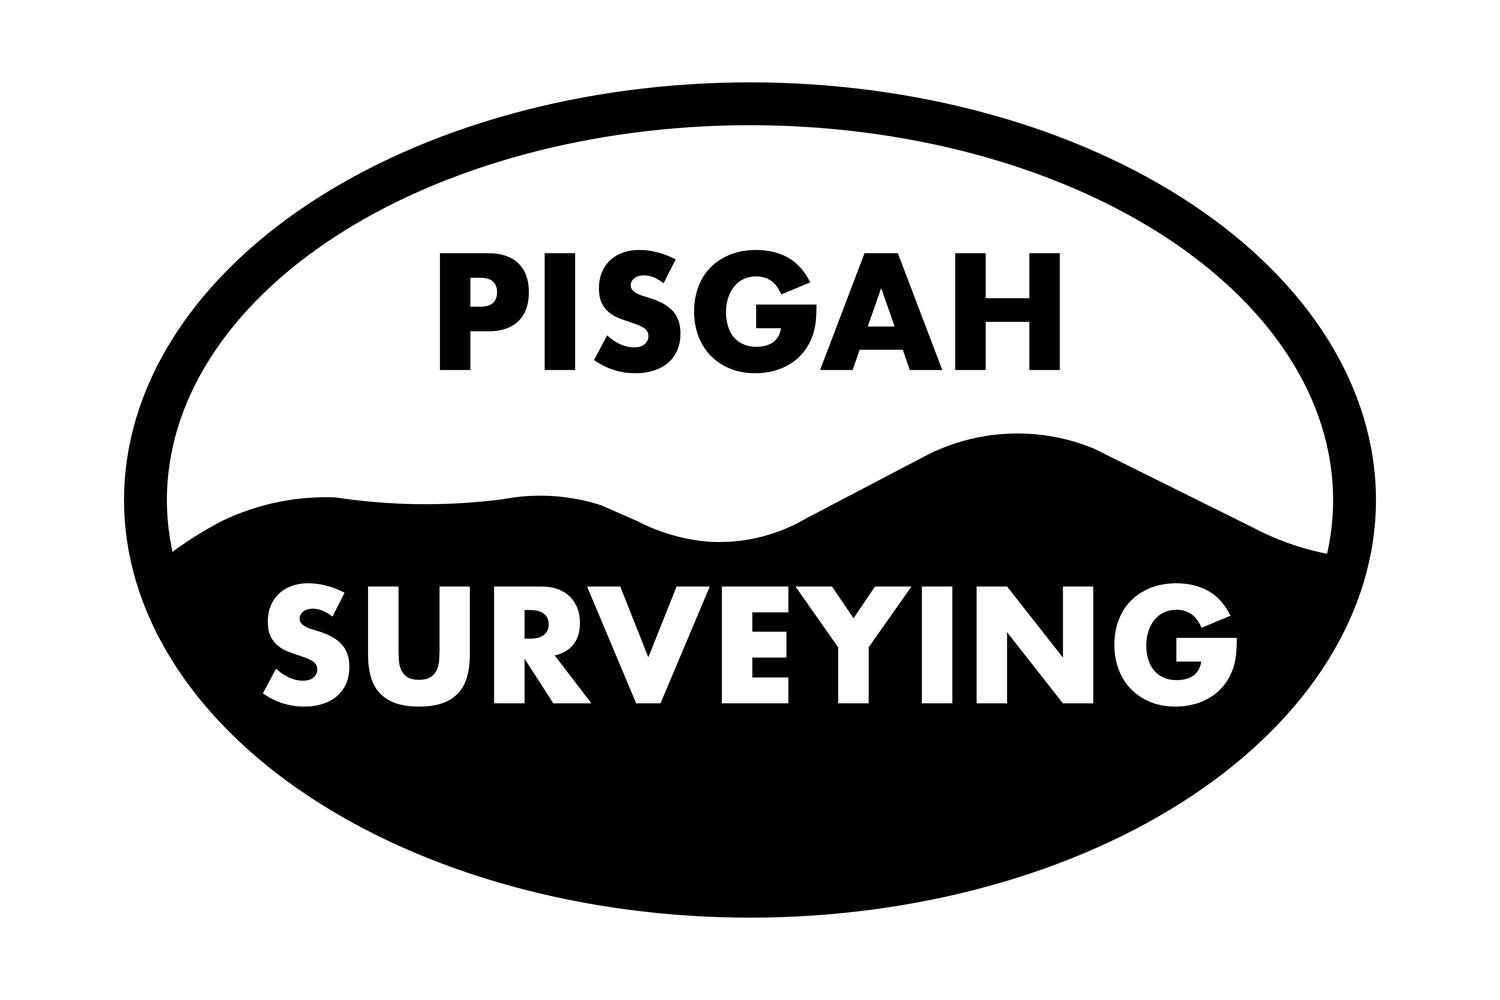 Pisgah Surveying